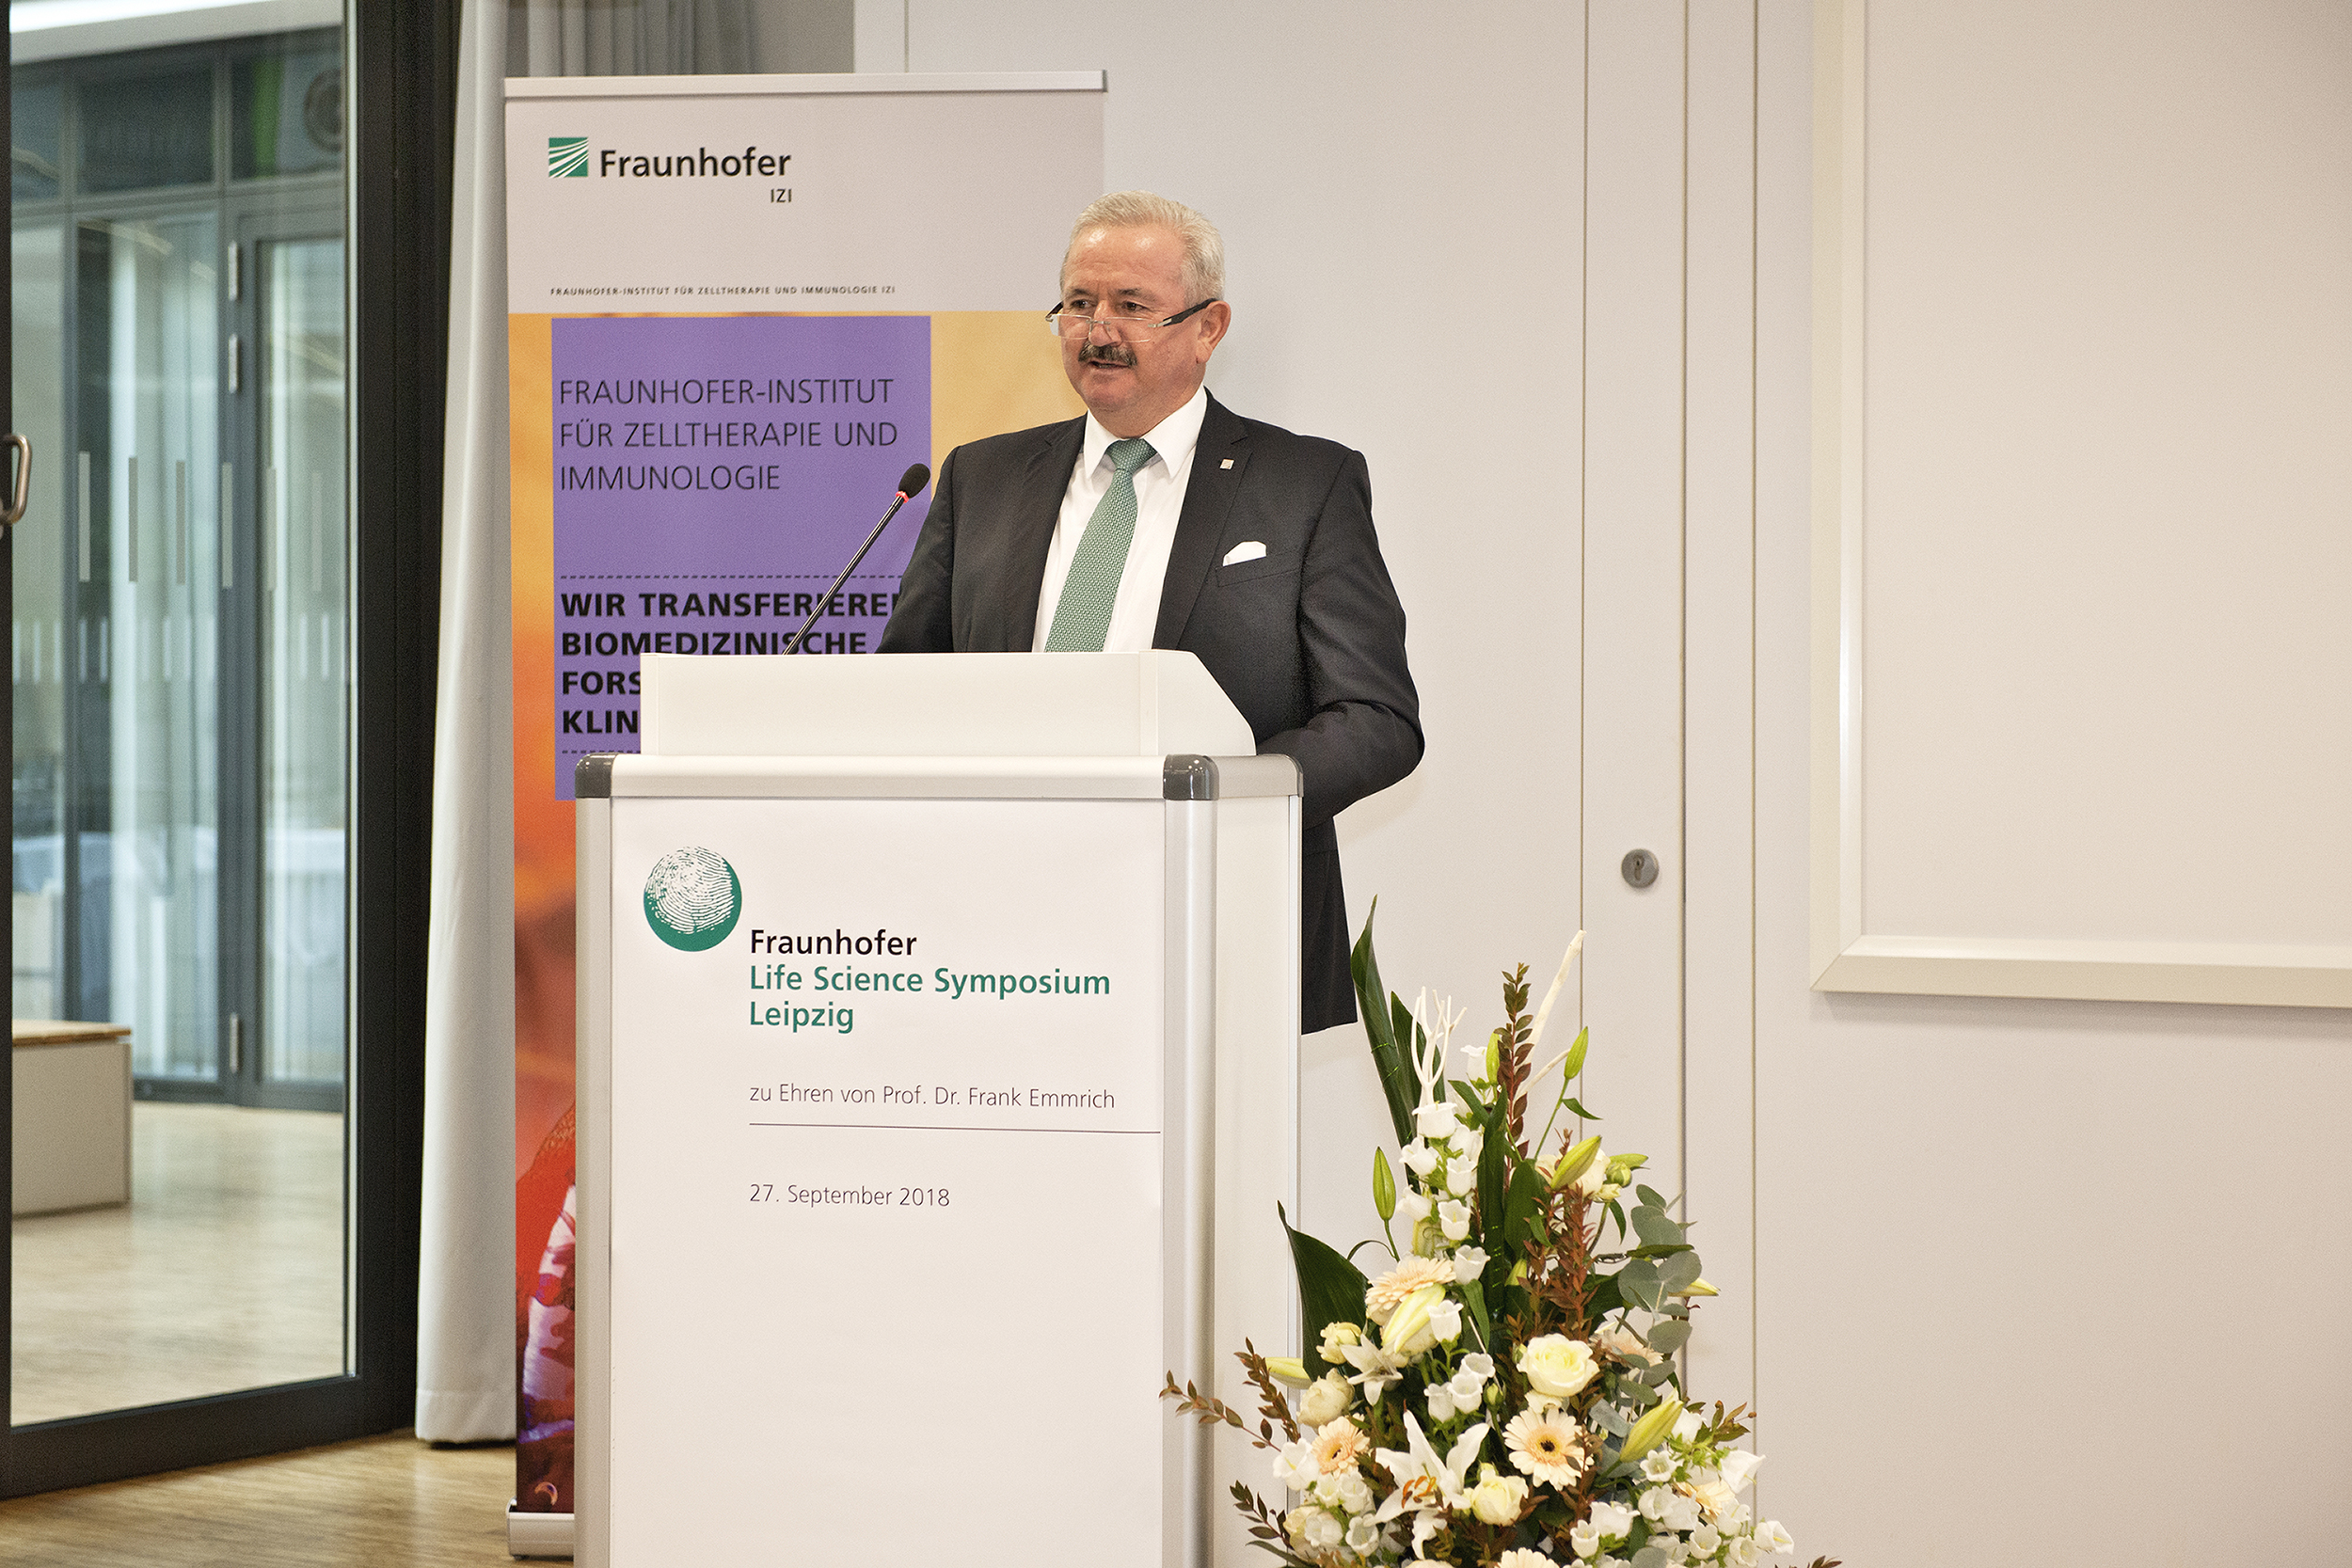 Prof. Dr. Reimund Neugebauer, Präsident der Fraunhofer-Gesellschaft, hielt beim Fraunhofer Life Science Symposium eine Laudatio auf Institutsgründer Prof. Dr. Frank Emmrich.